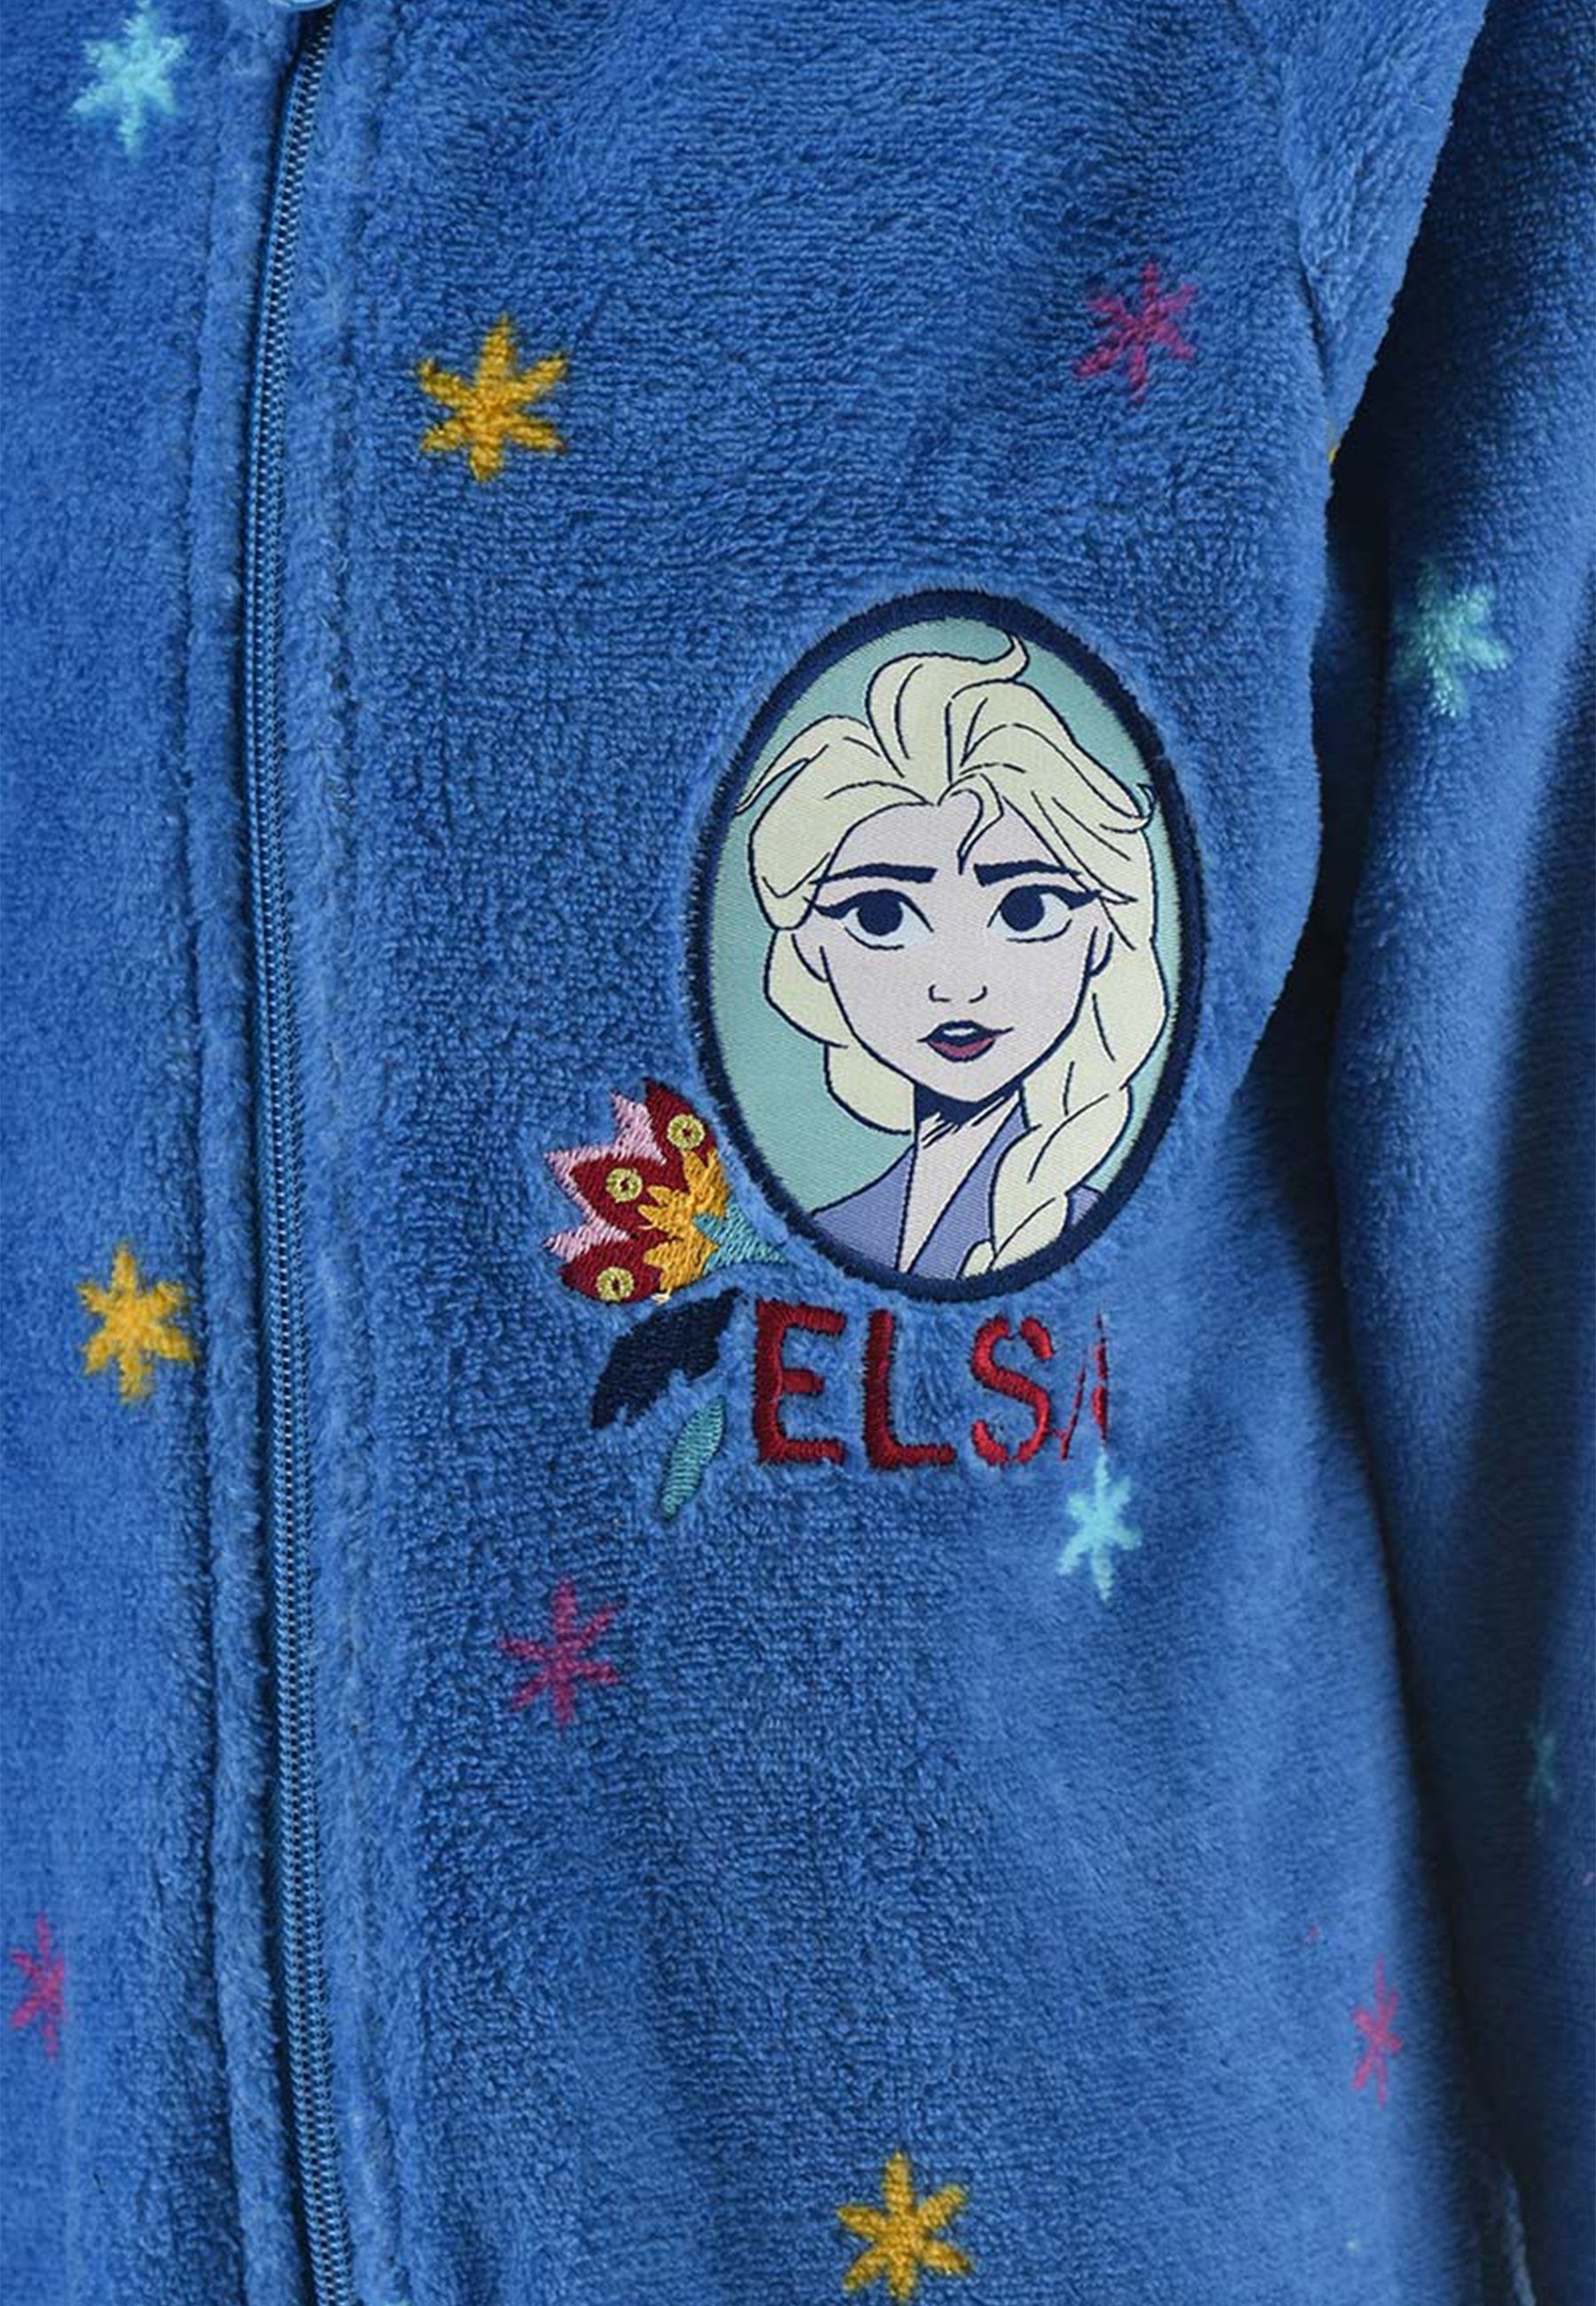 Pyjama Nachtwäsche Frozen langarm Schlaf Elsa Disney Overall Schlafanzug